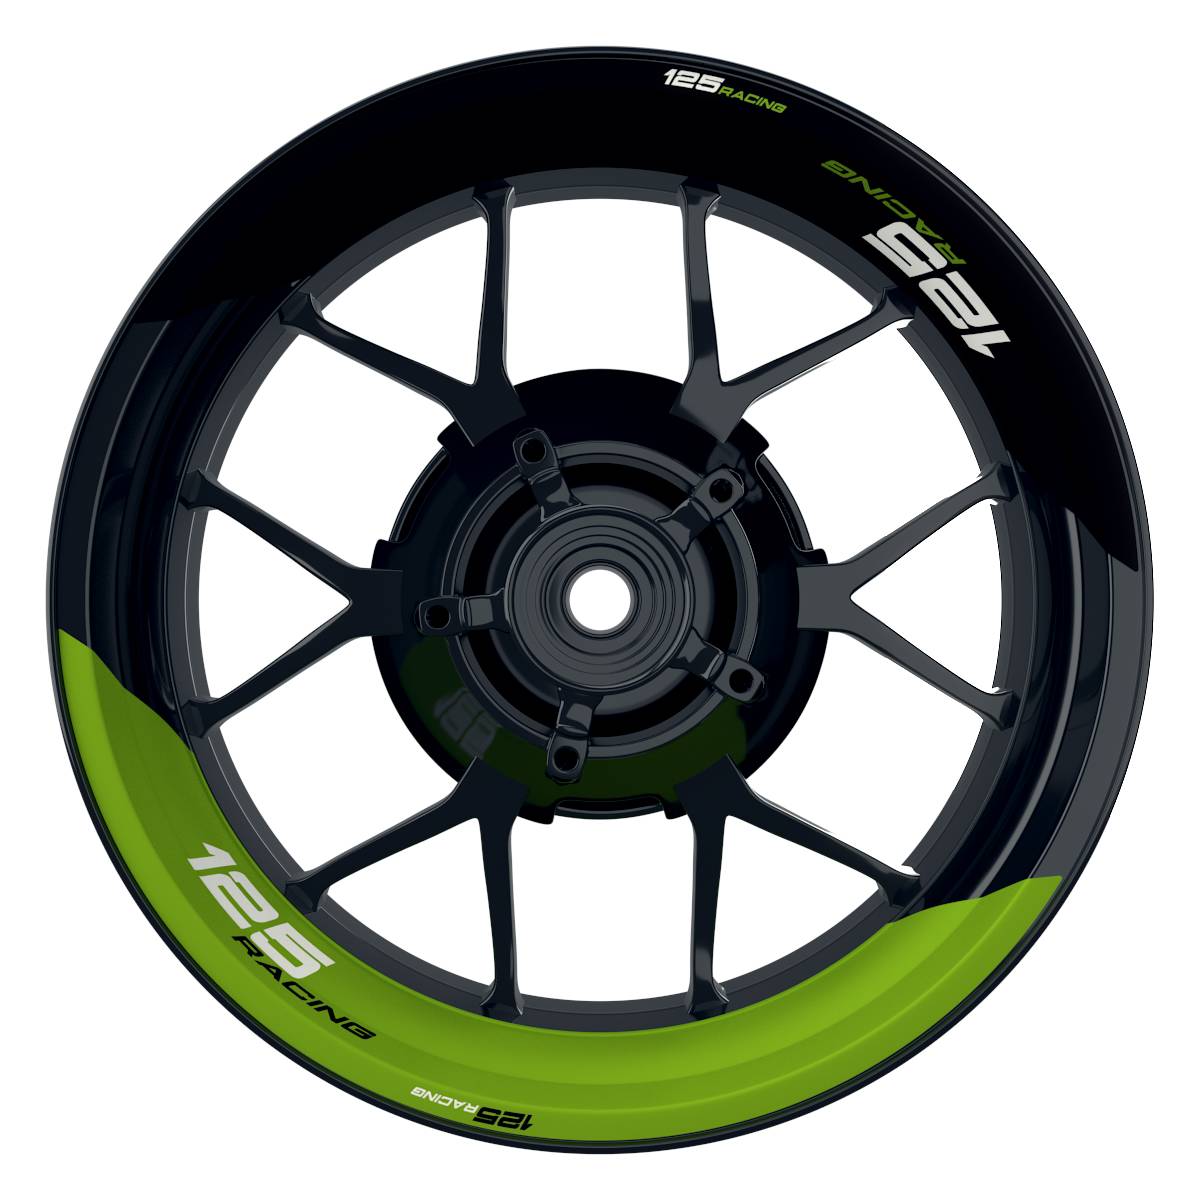 KTM Racing 125 halb halb schwarz gruen Frontansicht